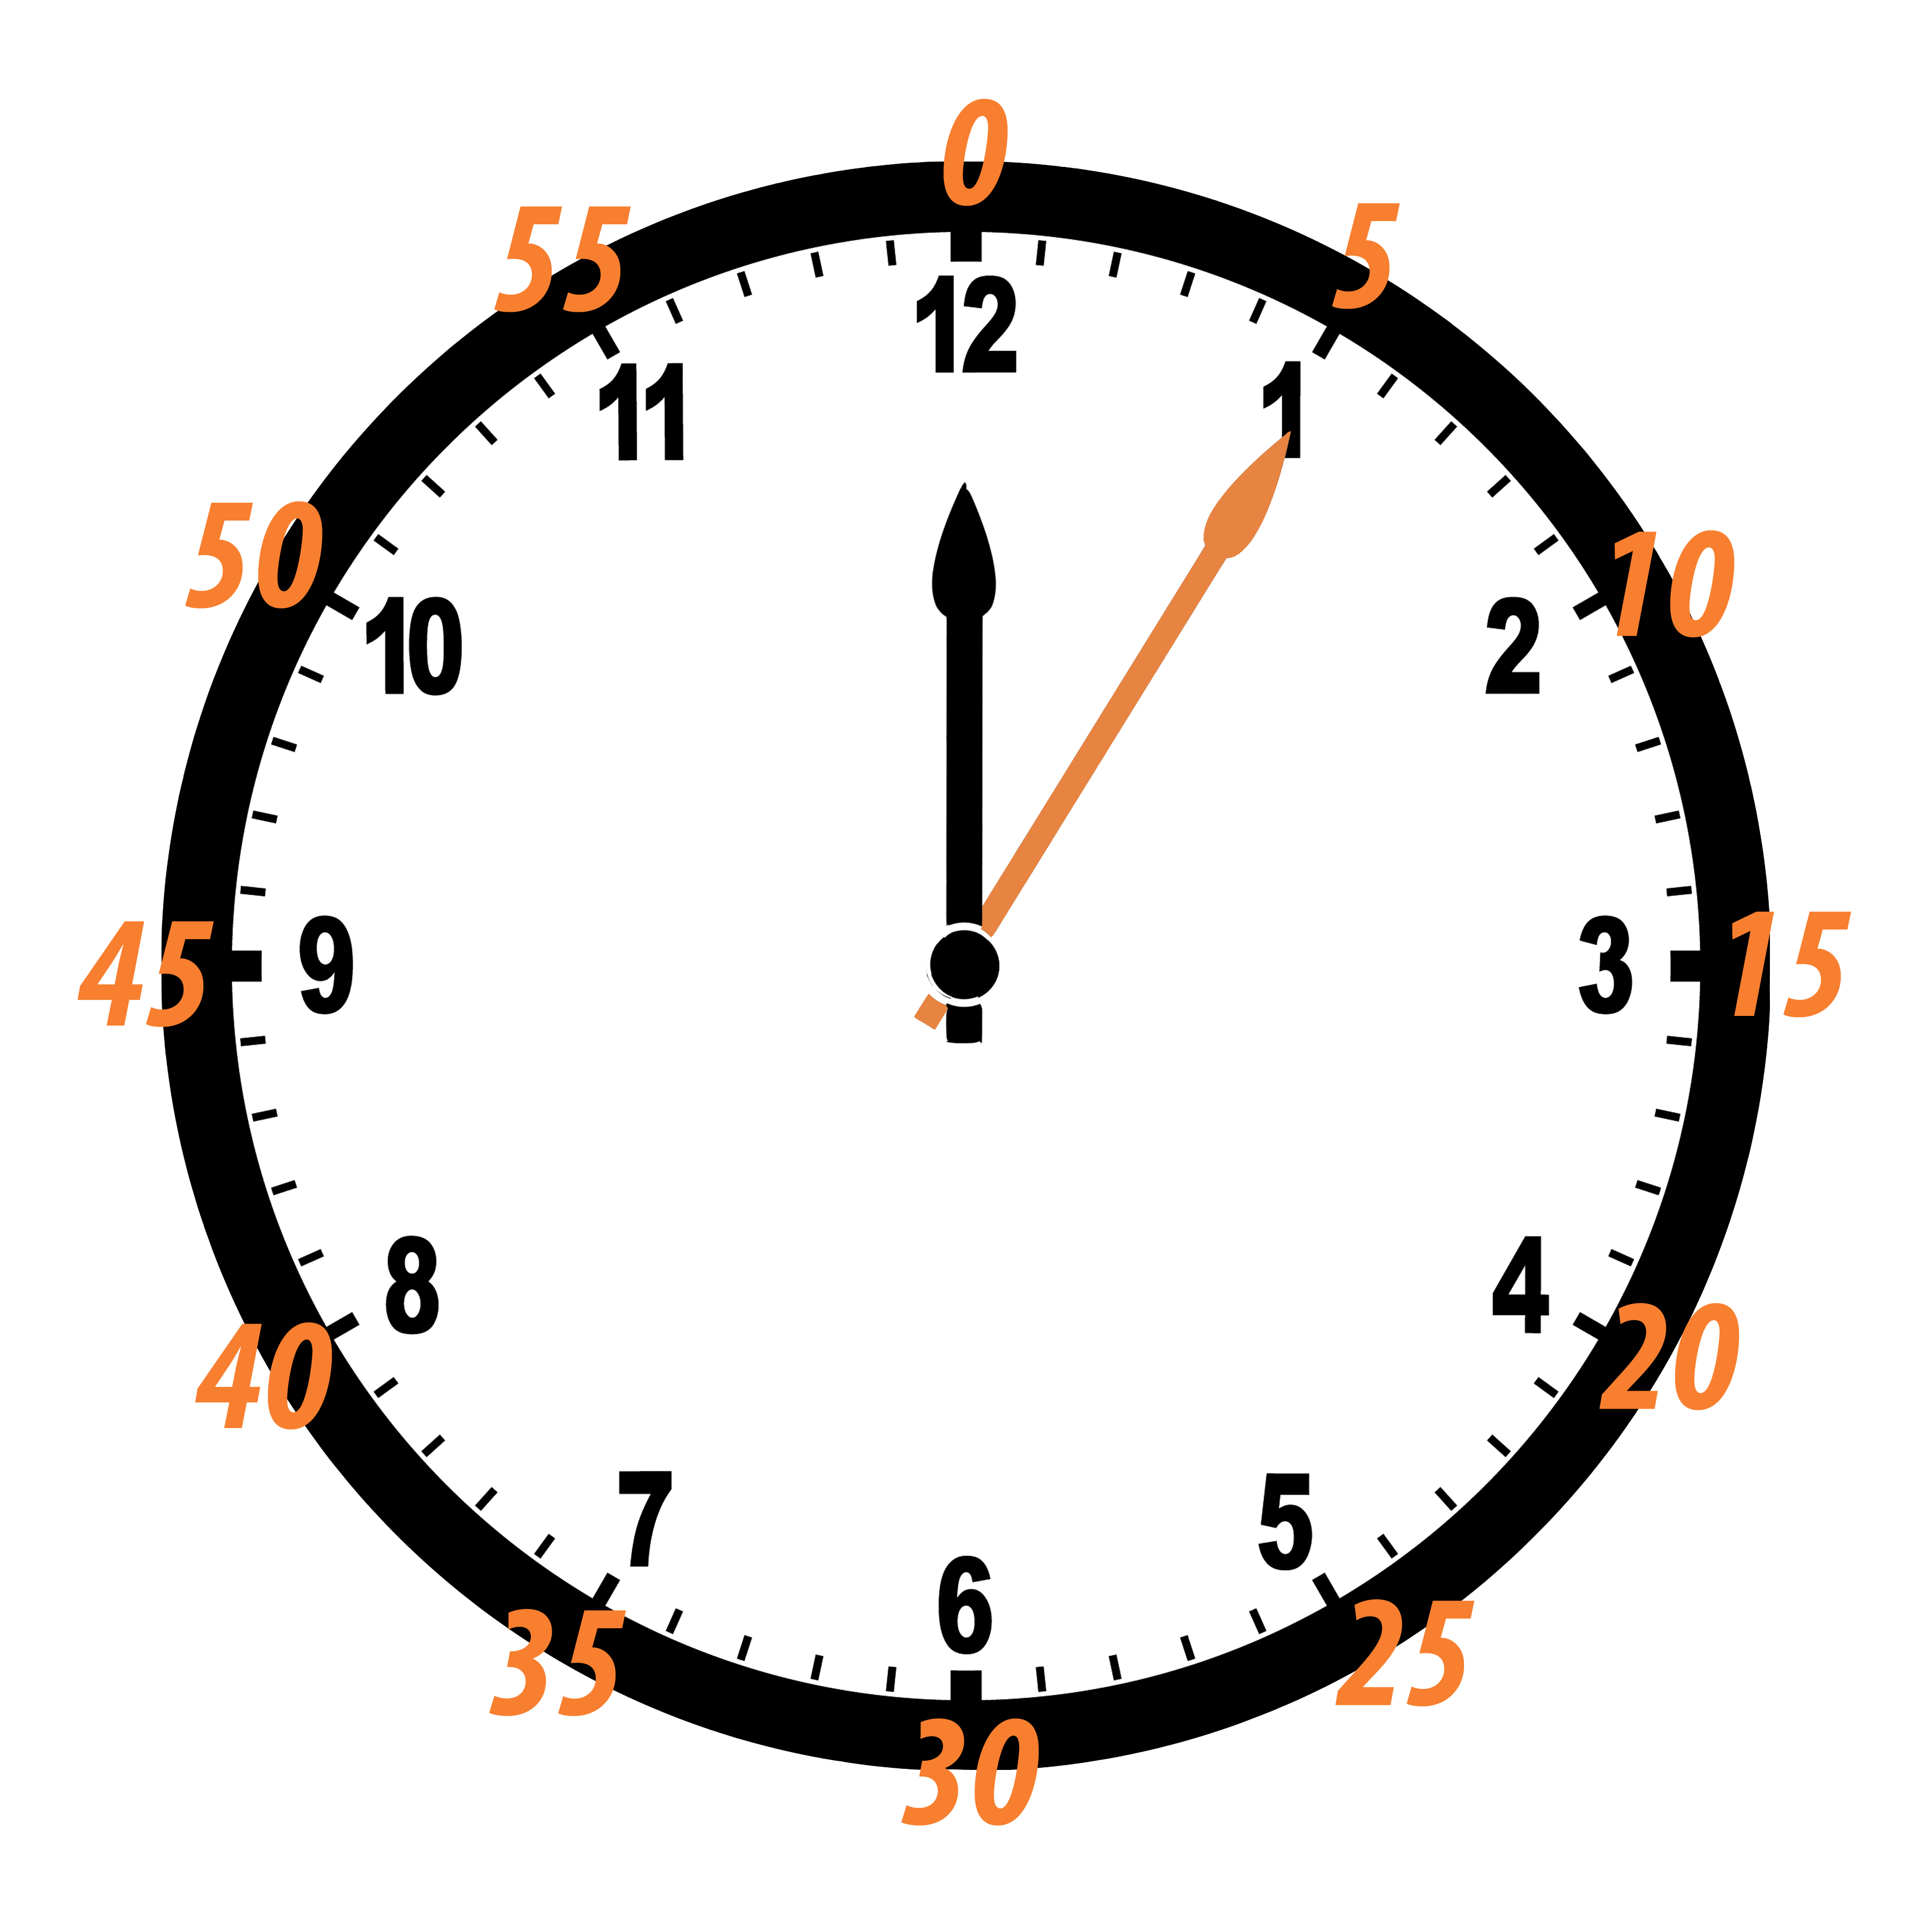 Время на часах 12 15. Часы. Часы циферблат. Изображение часов. Часы со стрелками.